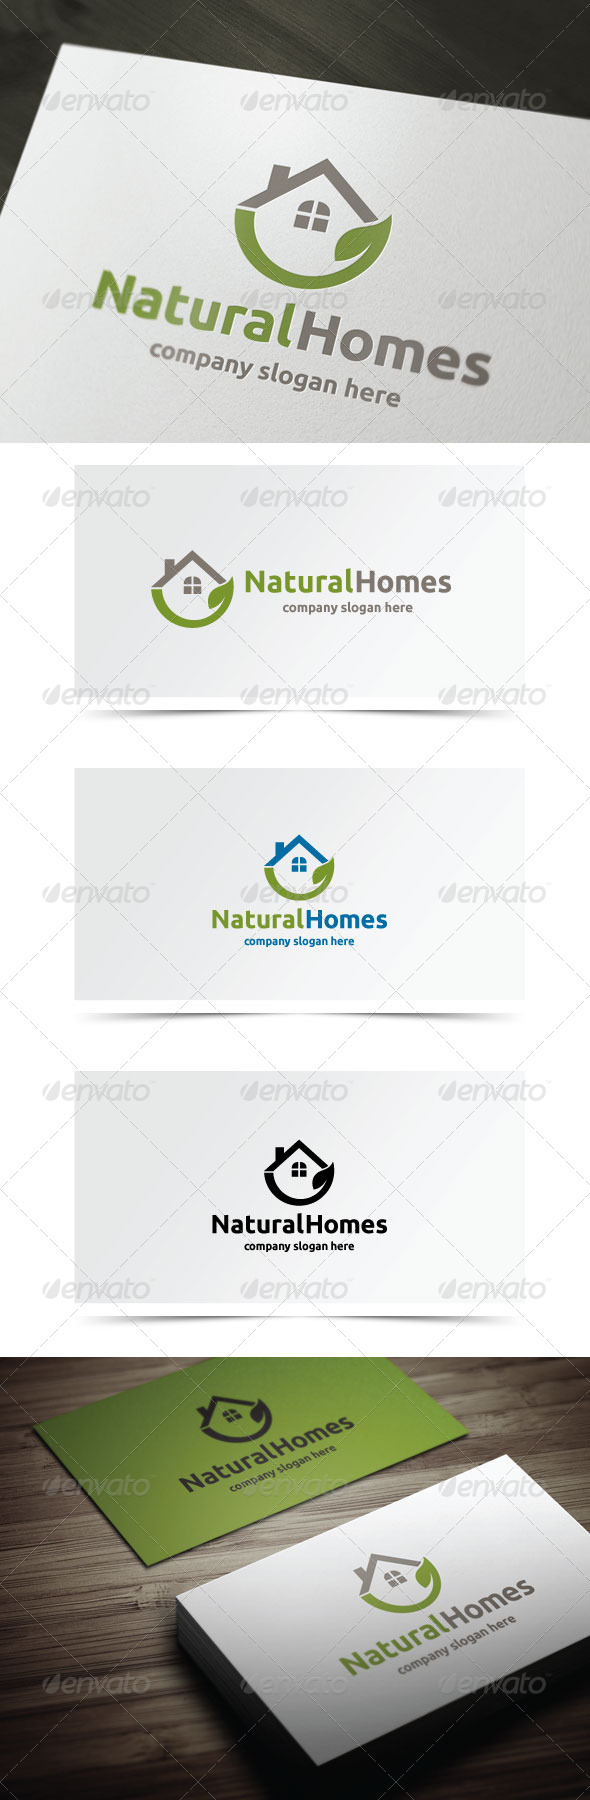 Natural Homes